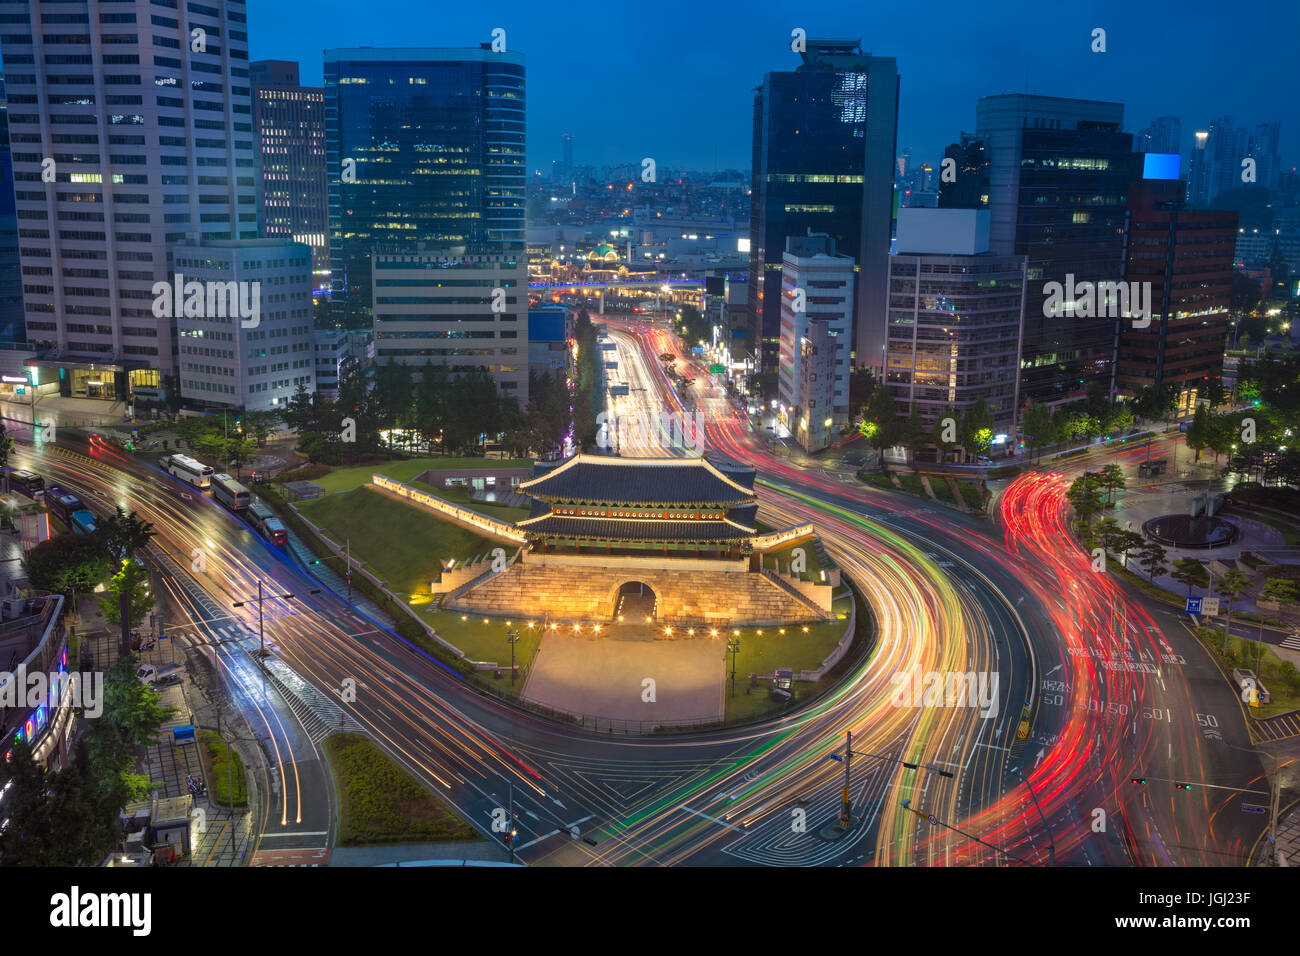 Séoul. Image de centre-ville de Séoul avec porte Sungnyemun Gate pendant le crépuscule heure bleue. Banque D'Images